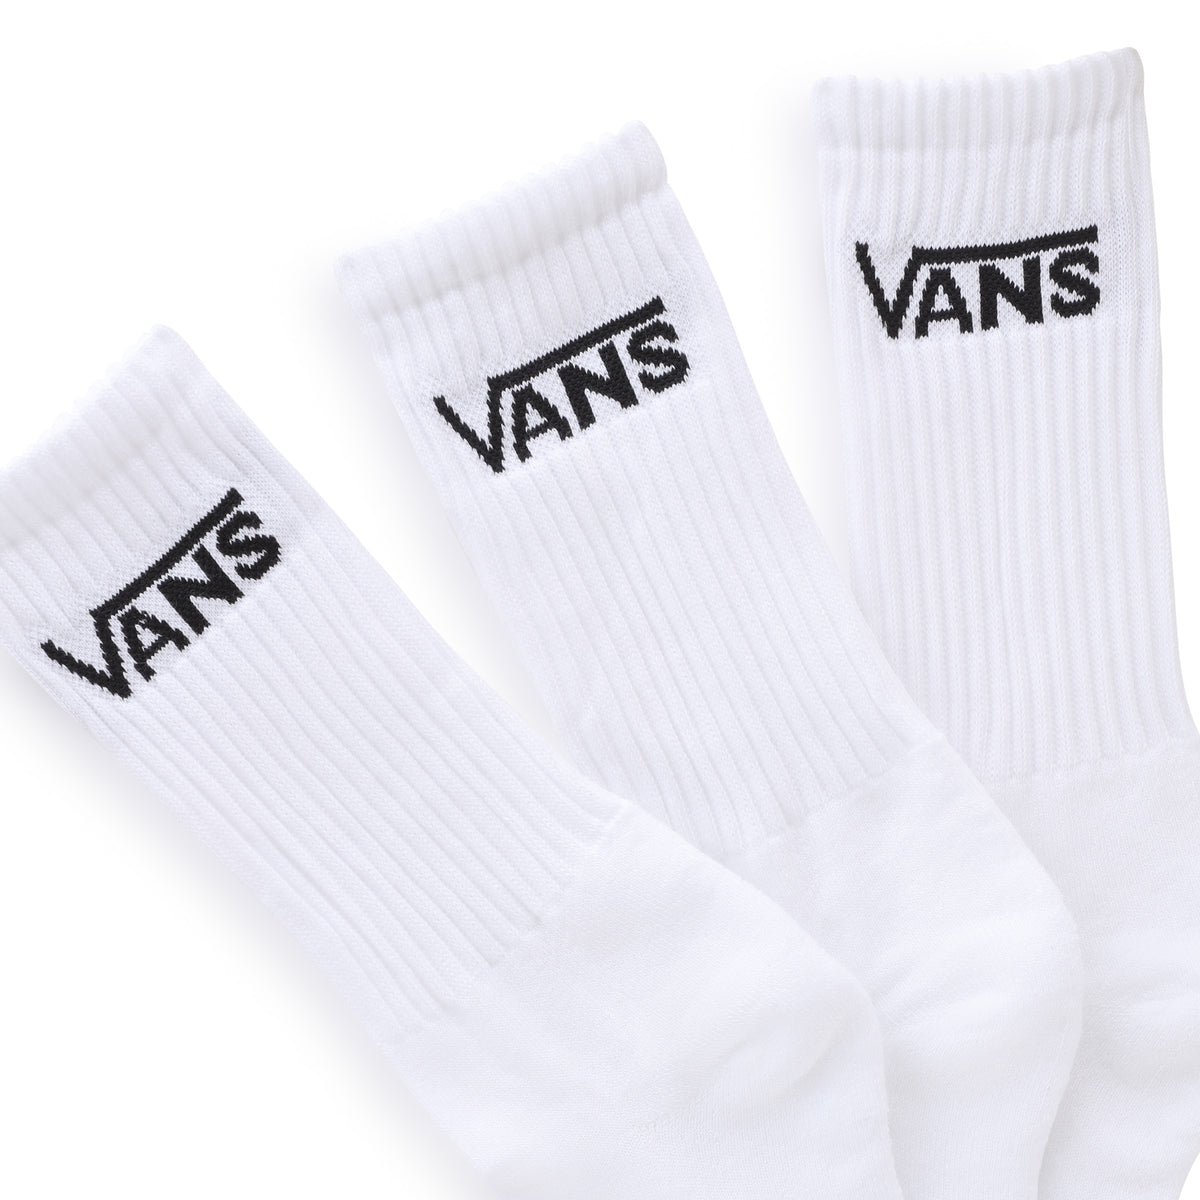 ואנס מארז 3 זוגות גרביים גבוהות 42.5-47 בצבע לבן-Vans-One Size-נאקו